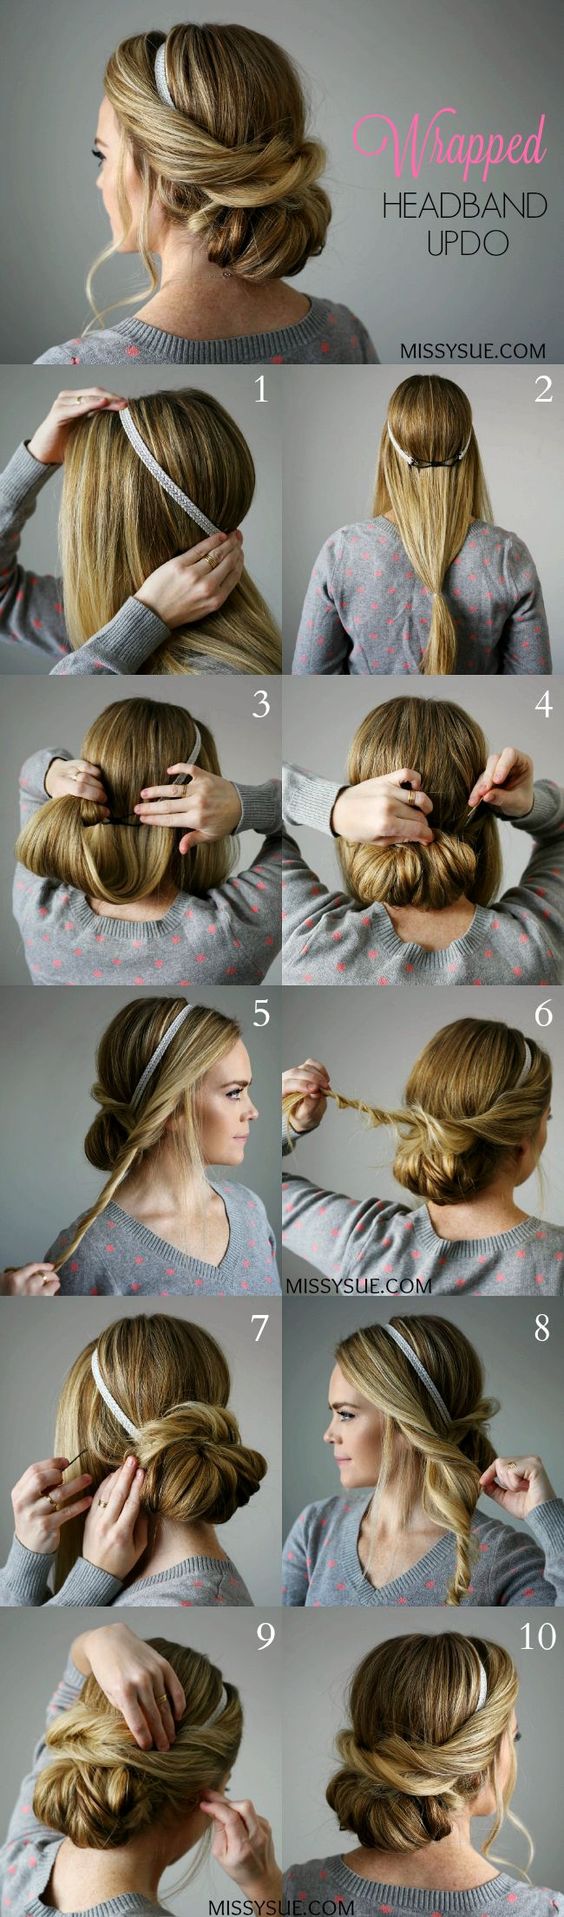 Preparación principio lazo 3 tutoriales para hacerse peinados con diademas: recogido, semirrecogido y  pelo suelto - Peinados sencillos